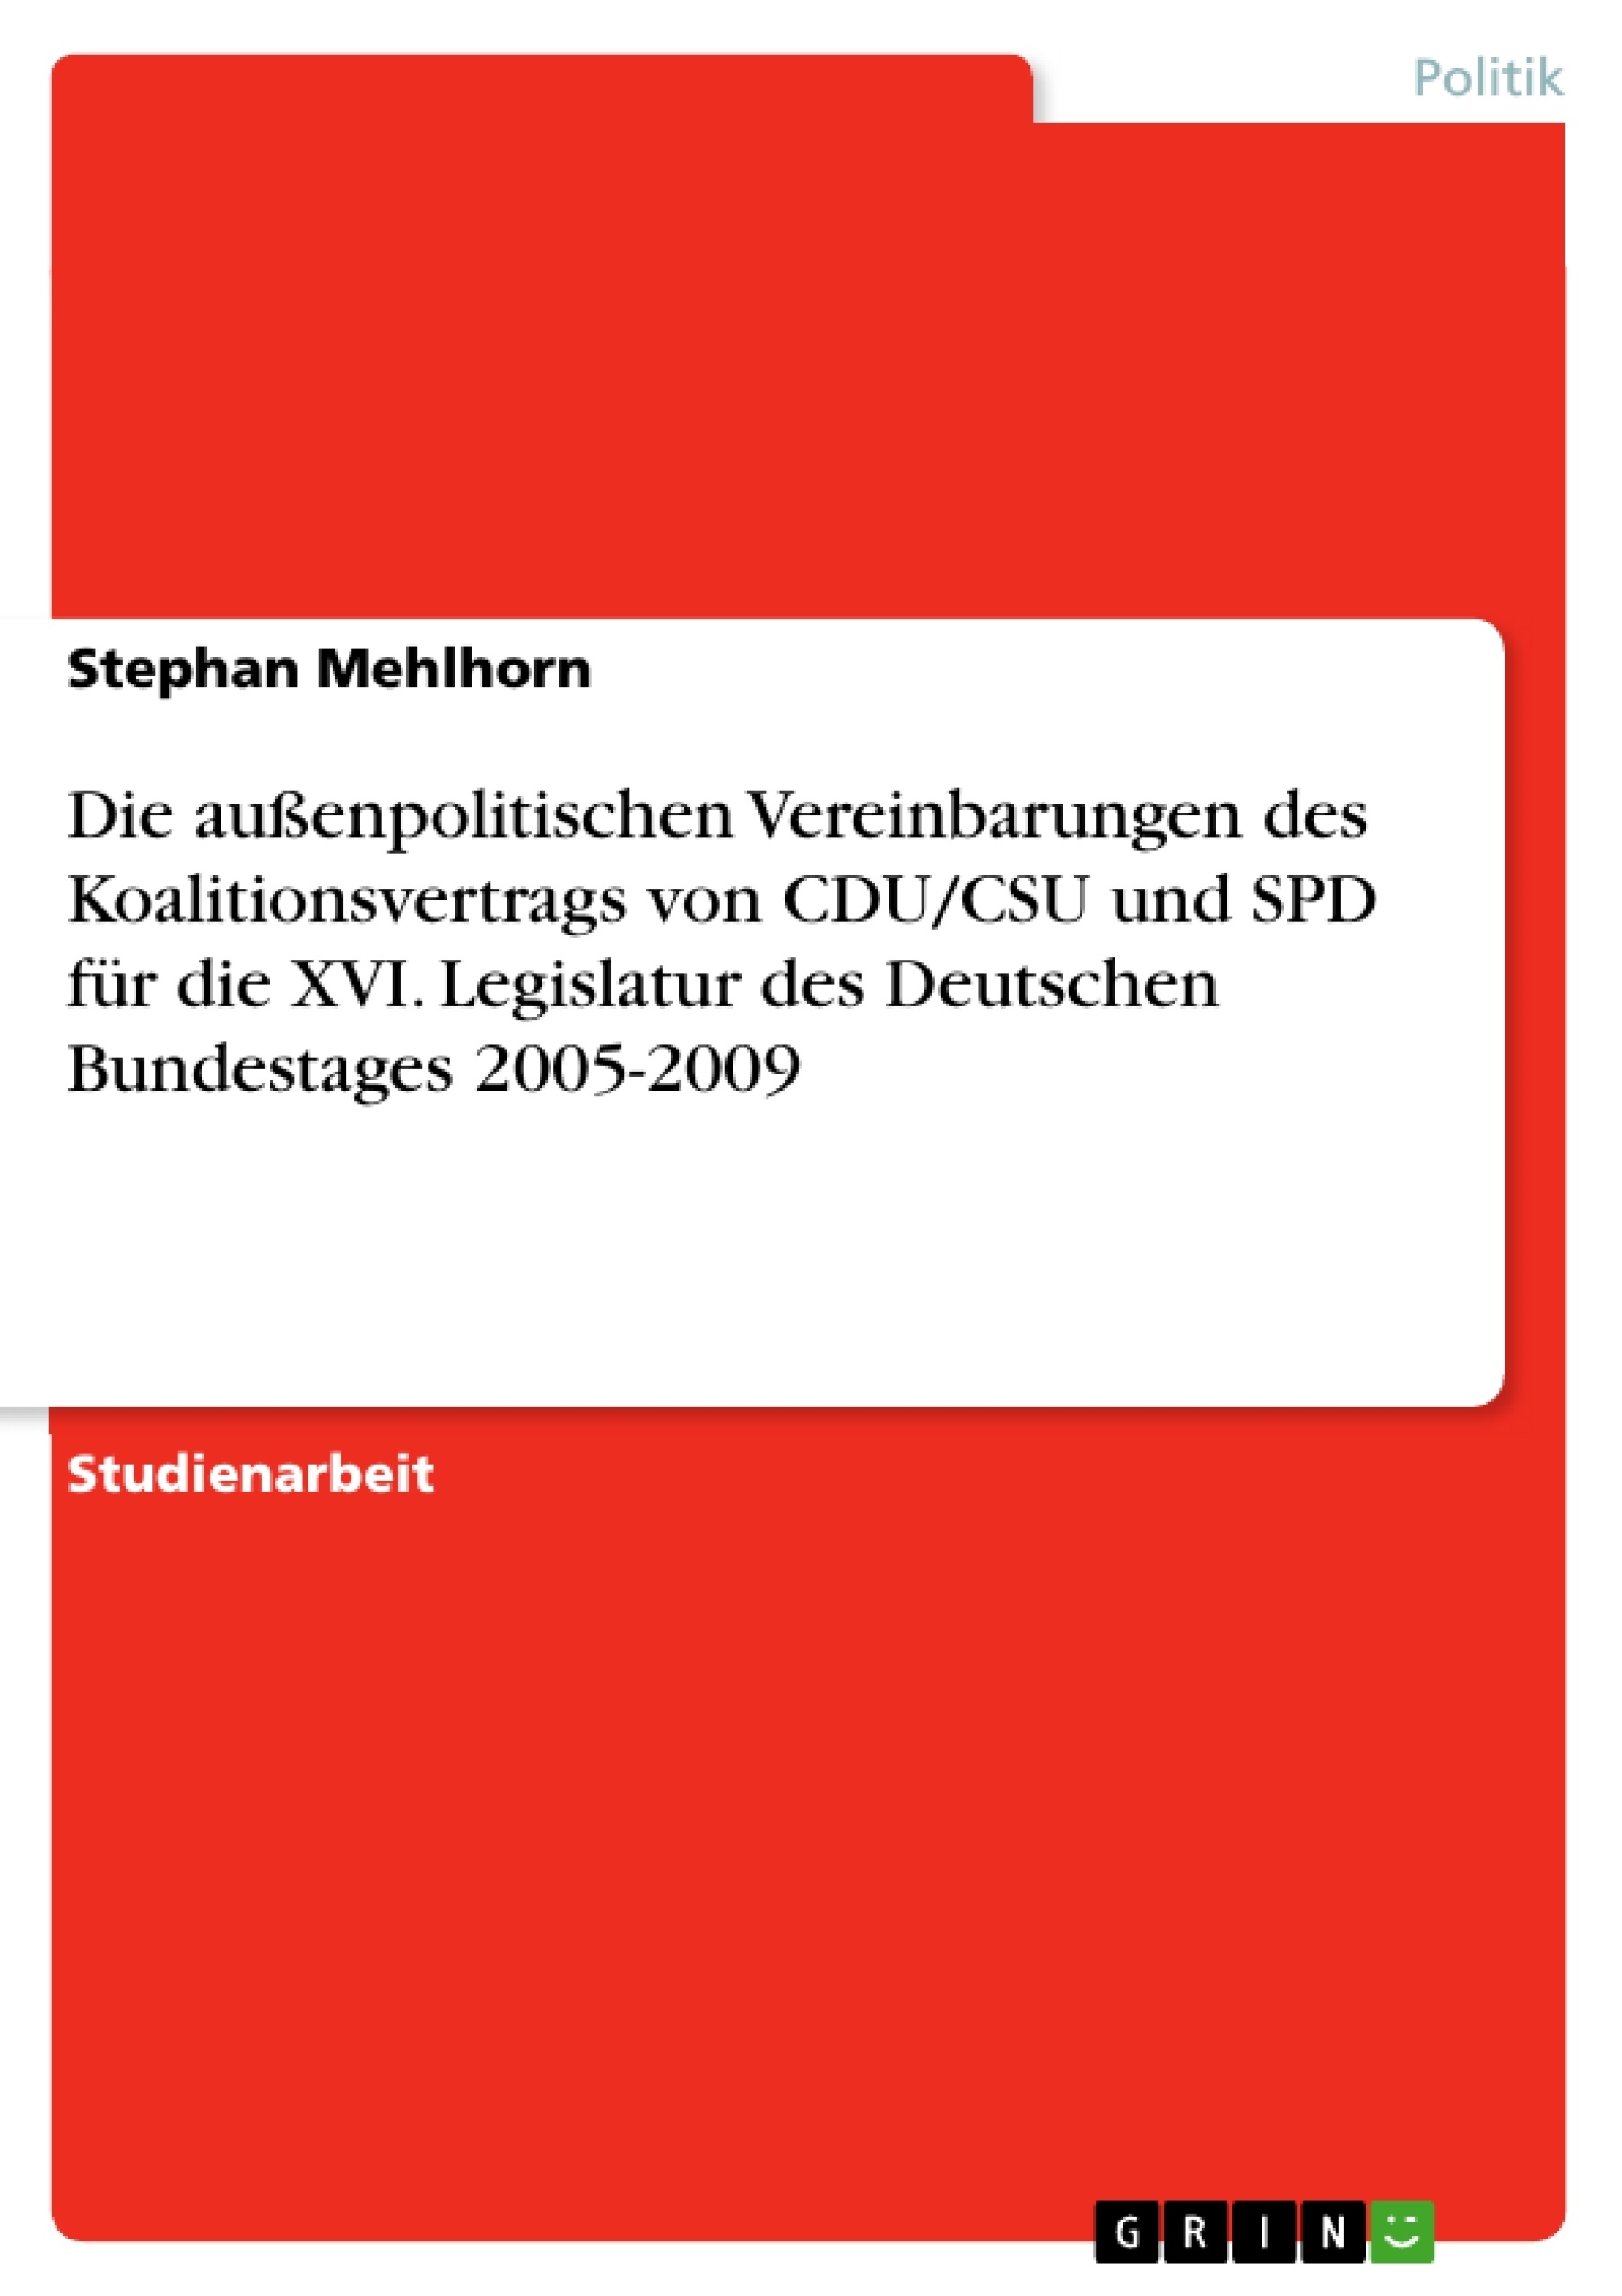 Titre: Die außenpolitischen Vereinbarungen des Koalitionsvertrags von CDU/CSU und SPD für die XVI. Legislatur des Deutschen Bundestages 2005-2009